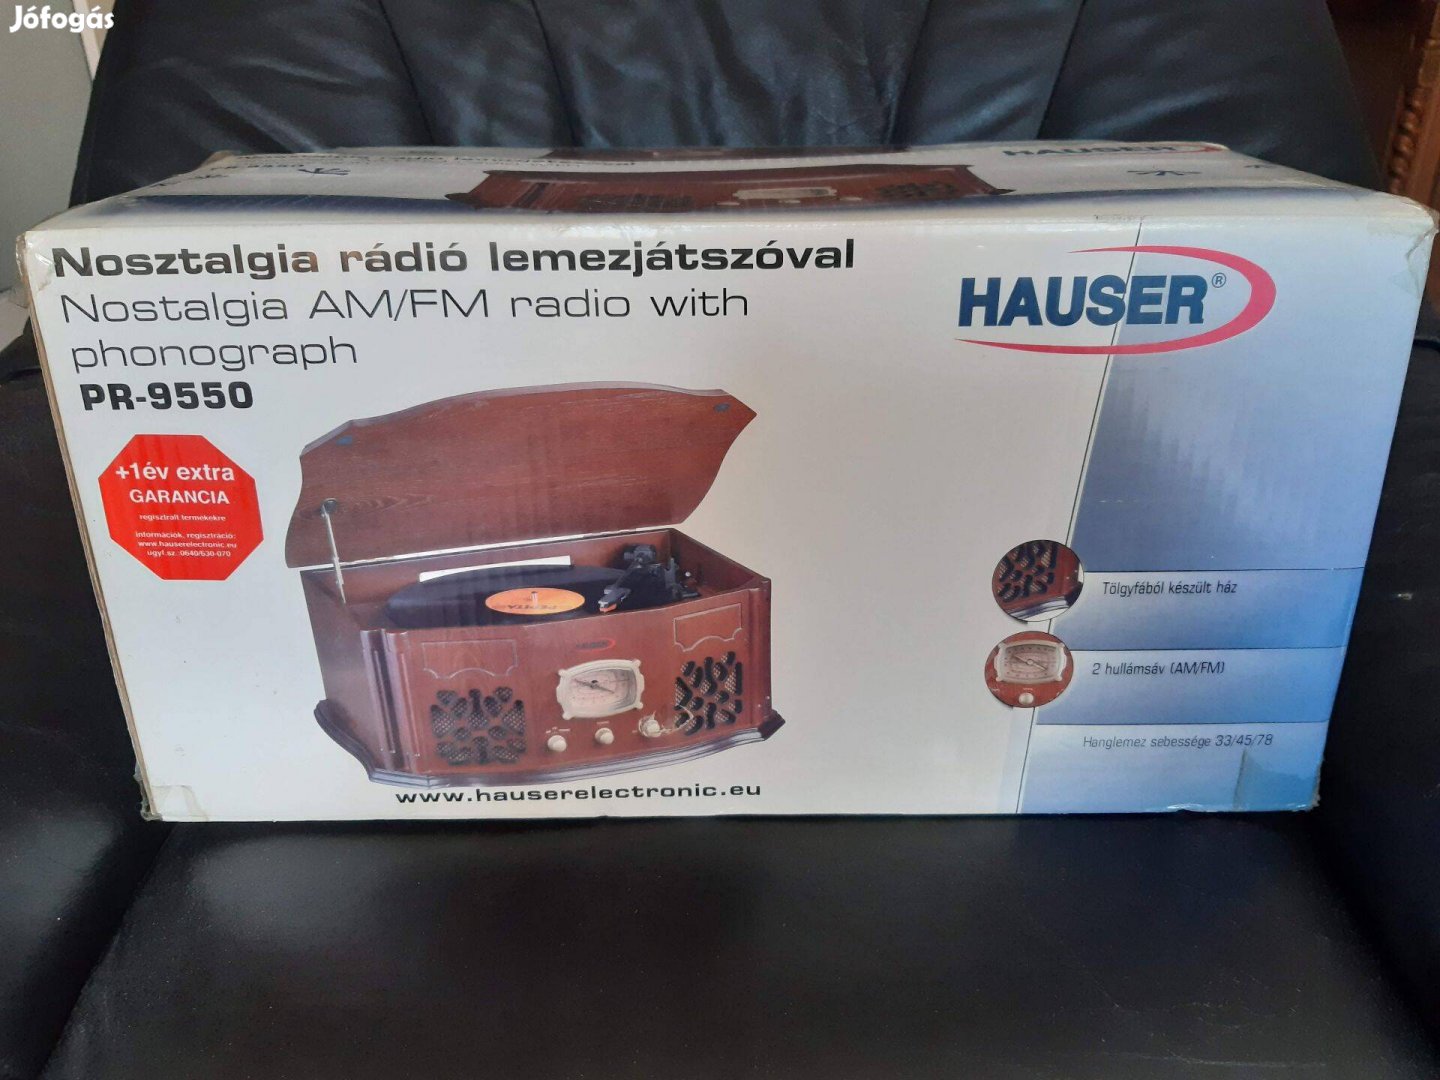 Hauser Nosztalgia rádió lemezjátszóval